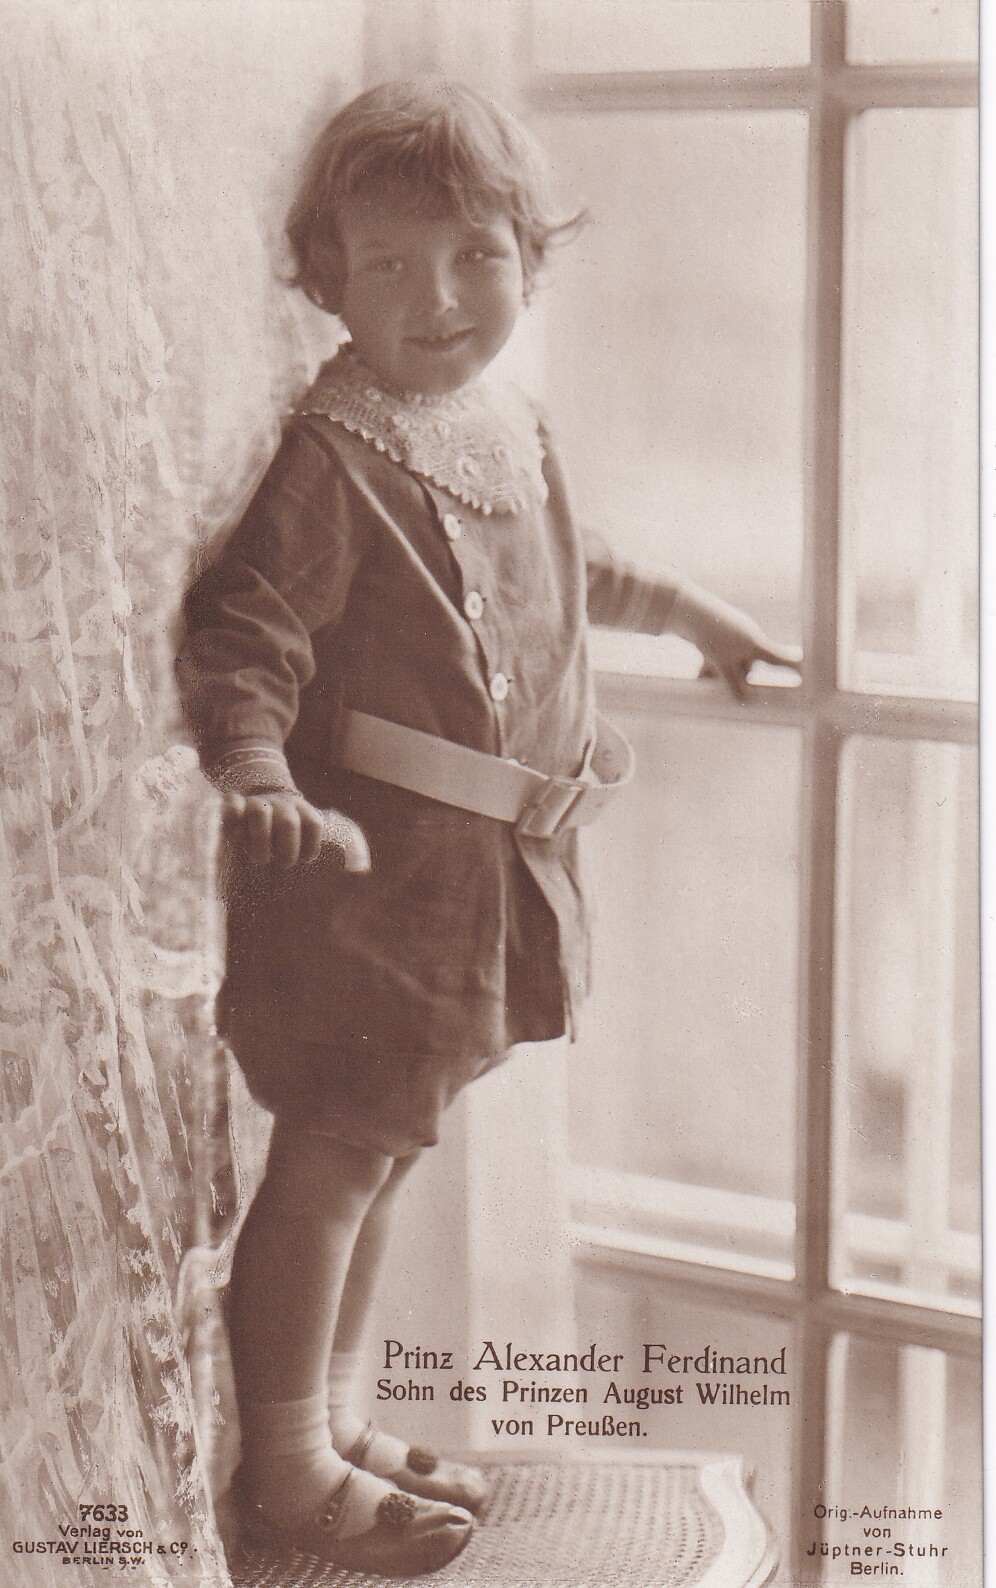 Bildpostkarte mit Foto des Prinzen Alexander Ferdinand von Preußen, 1915 (Schloß Wernigerode GmbH RR-F)